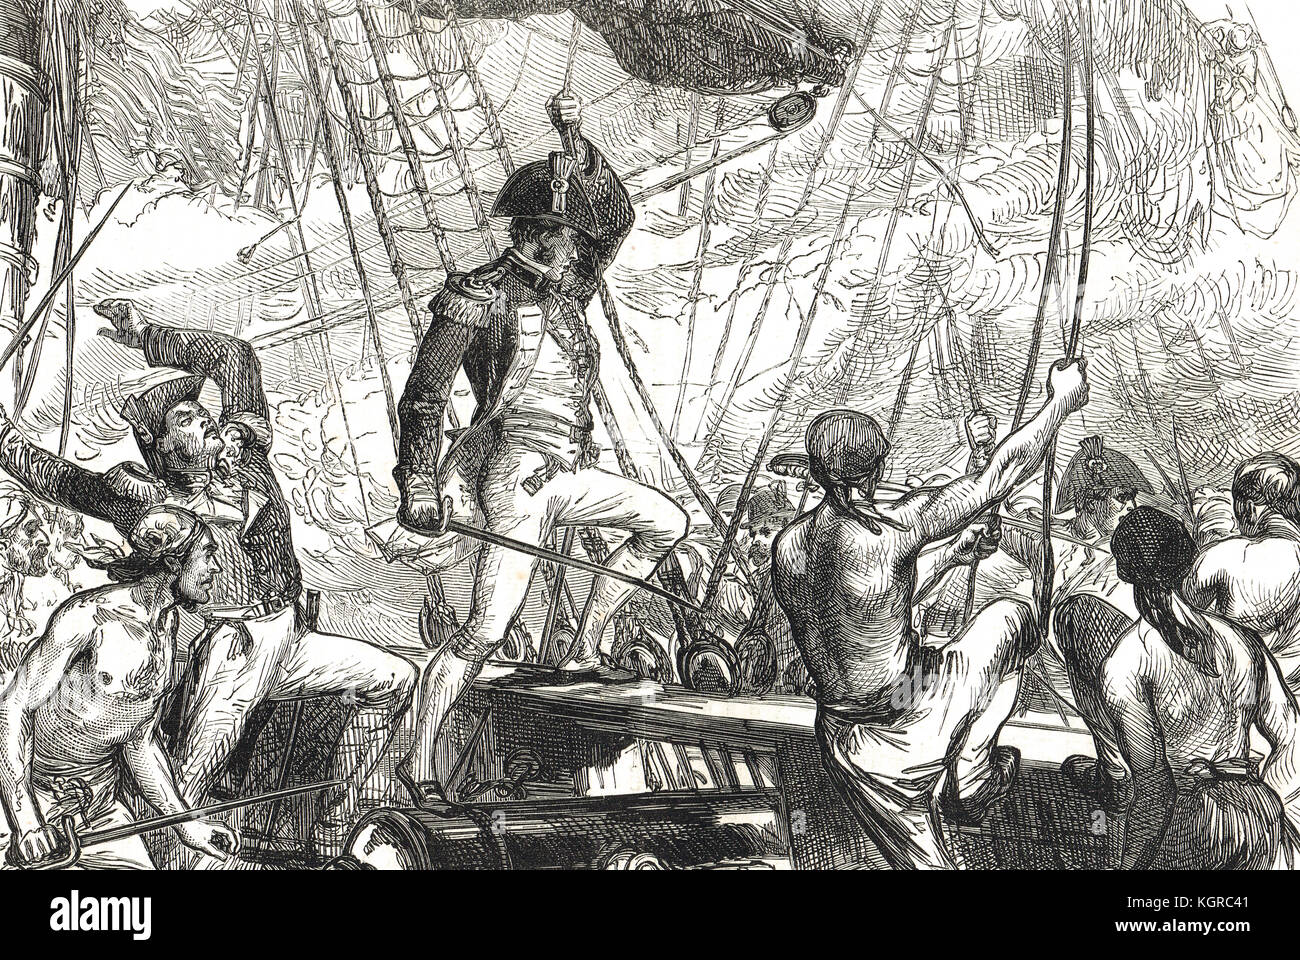 Britische Boarding Parties, Boarding USS Argus, 14. August 1813, Krieg von 1812 Stockfoto